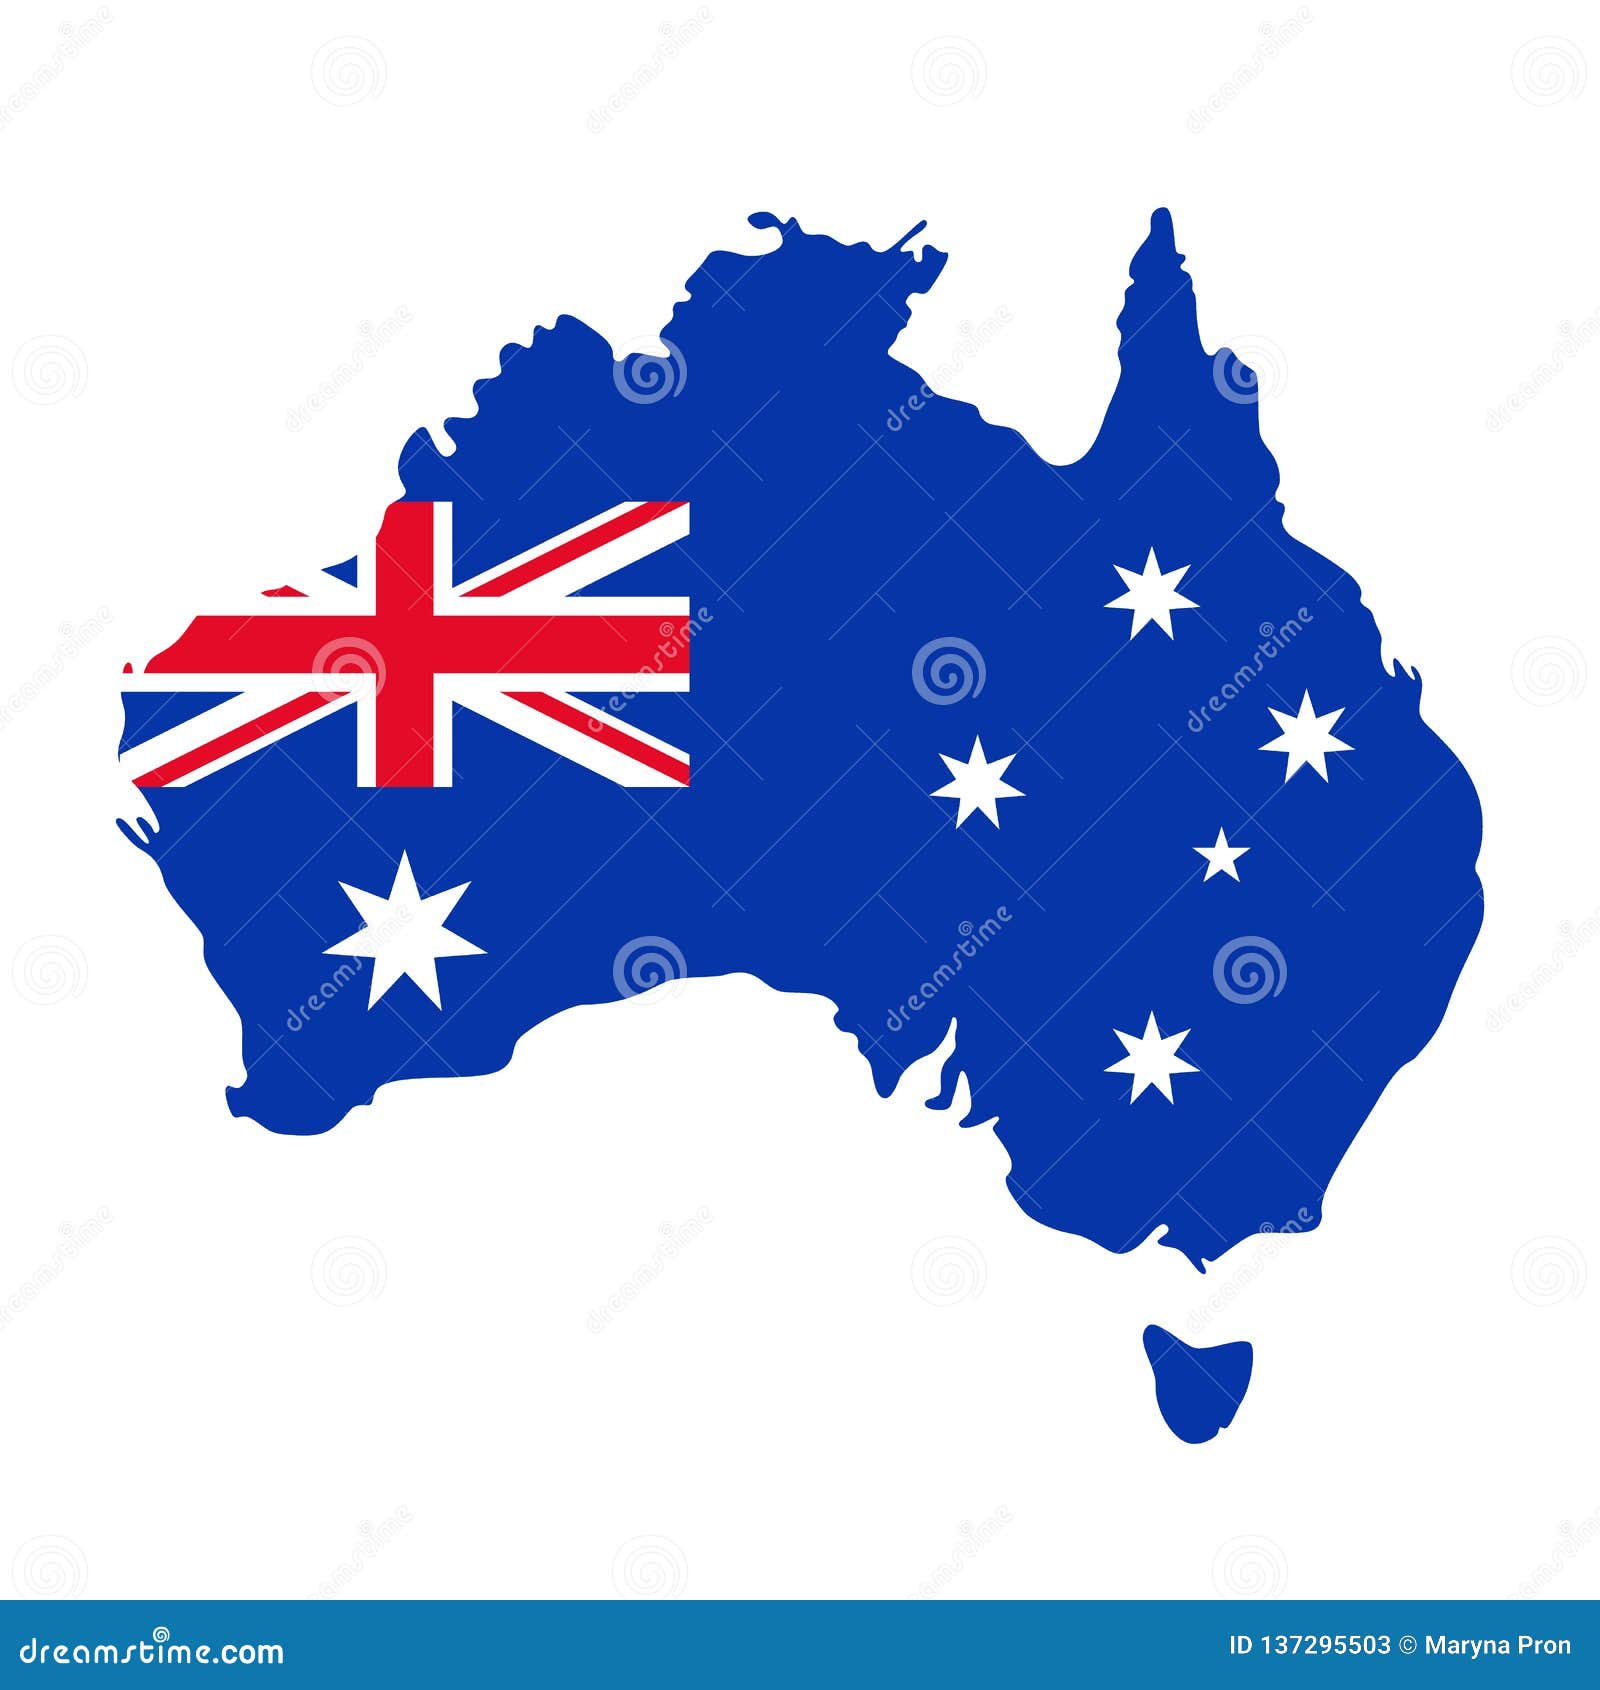 Hãy chiêm ngưỡng bản đồ Úc với lá cờ đầy màu sắc và trang trí đẹp mắt. Vector hình minh họa được tạo ra với tâm huyết và chất lượng cao, sẽ giúp bạn hiểu rõ hơn về đất nước Úc và truyền tải niềm tự hào của người Úc đối với quê hương của mình.